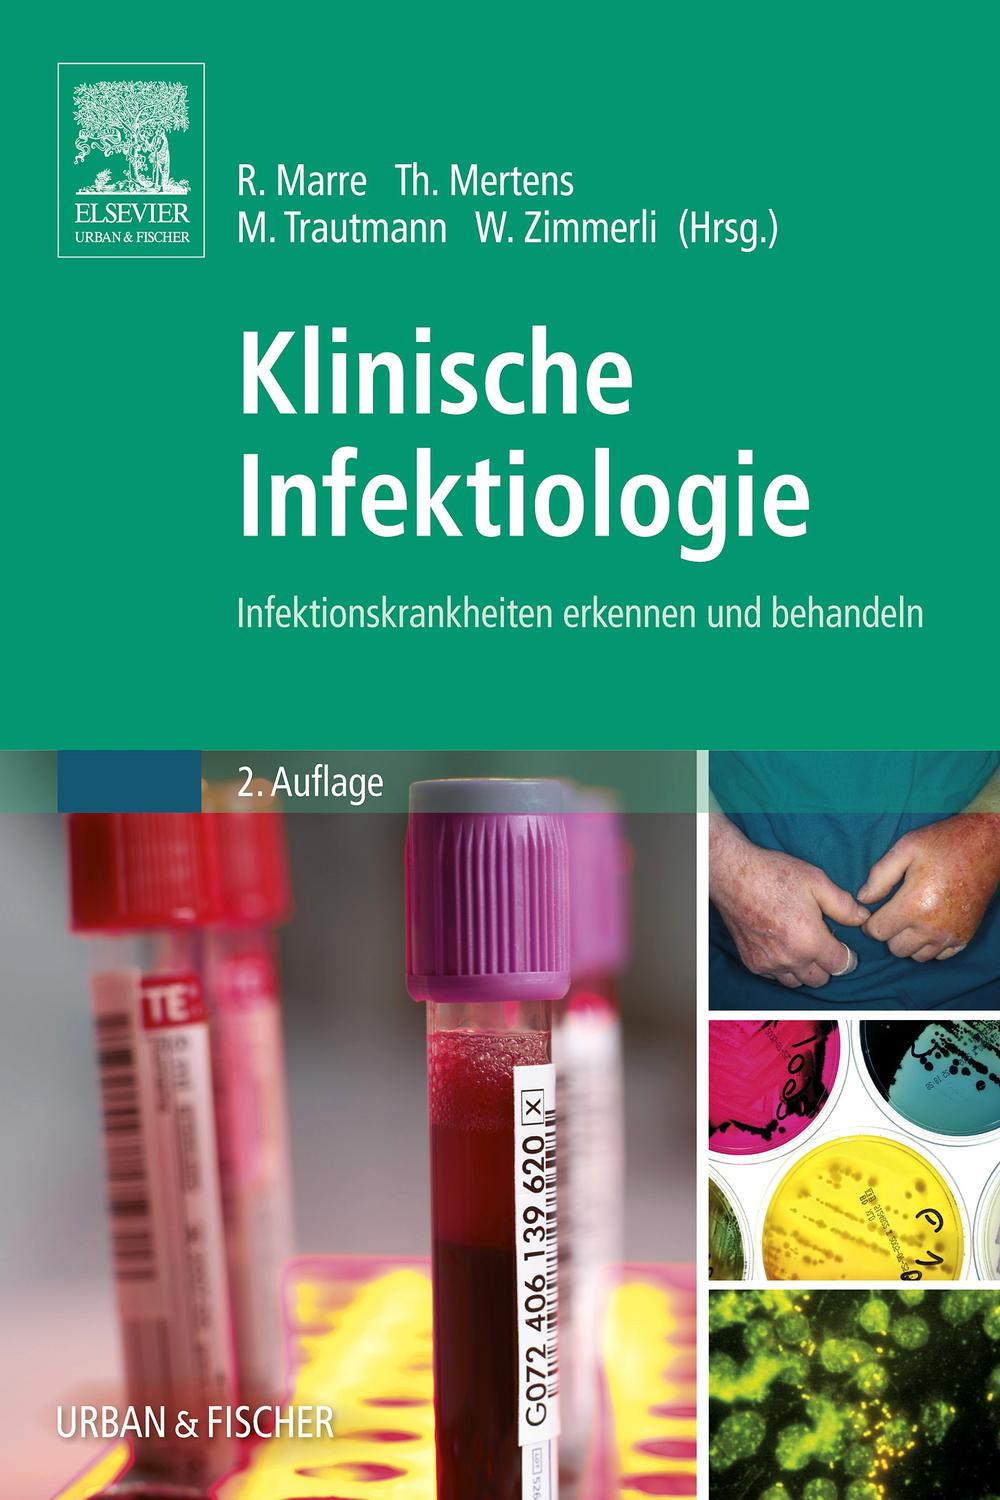 Klinische Infektiologie - Reinhard Marre, Thomas Mertens, Matthias Trautmann, Werner Zimmerli